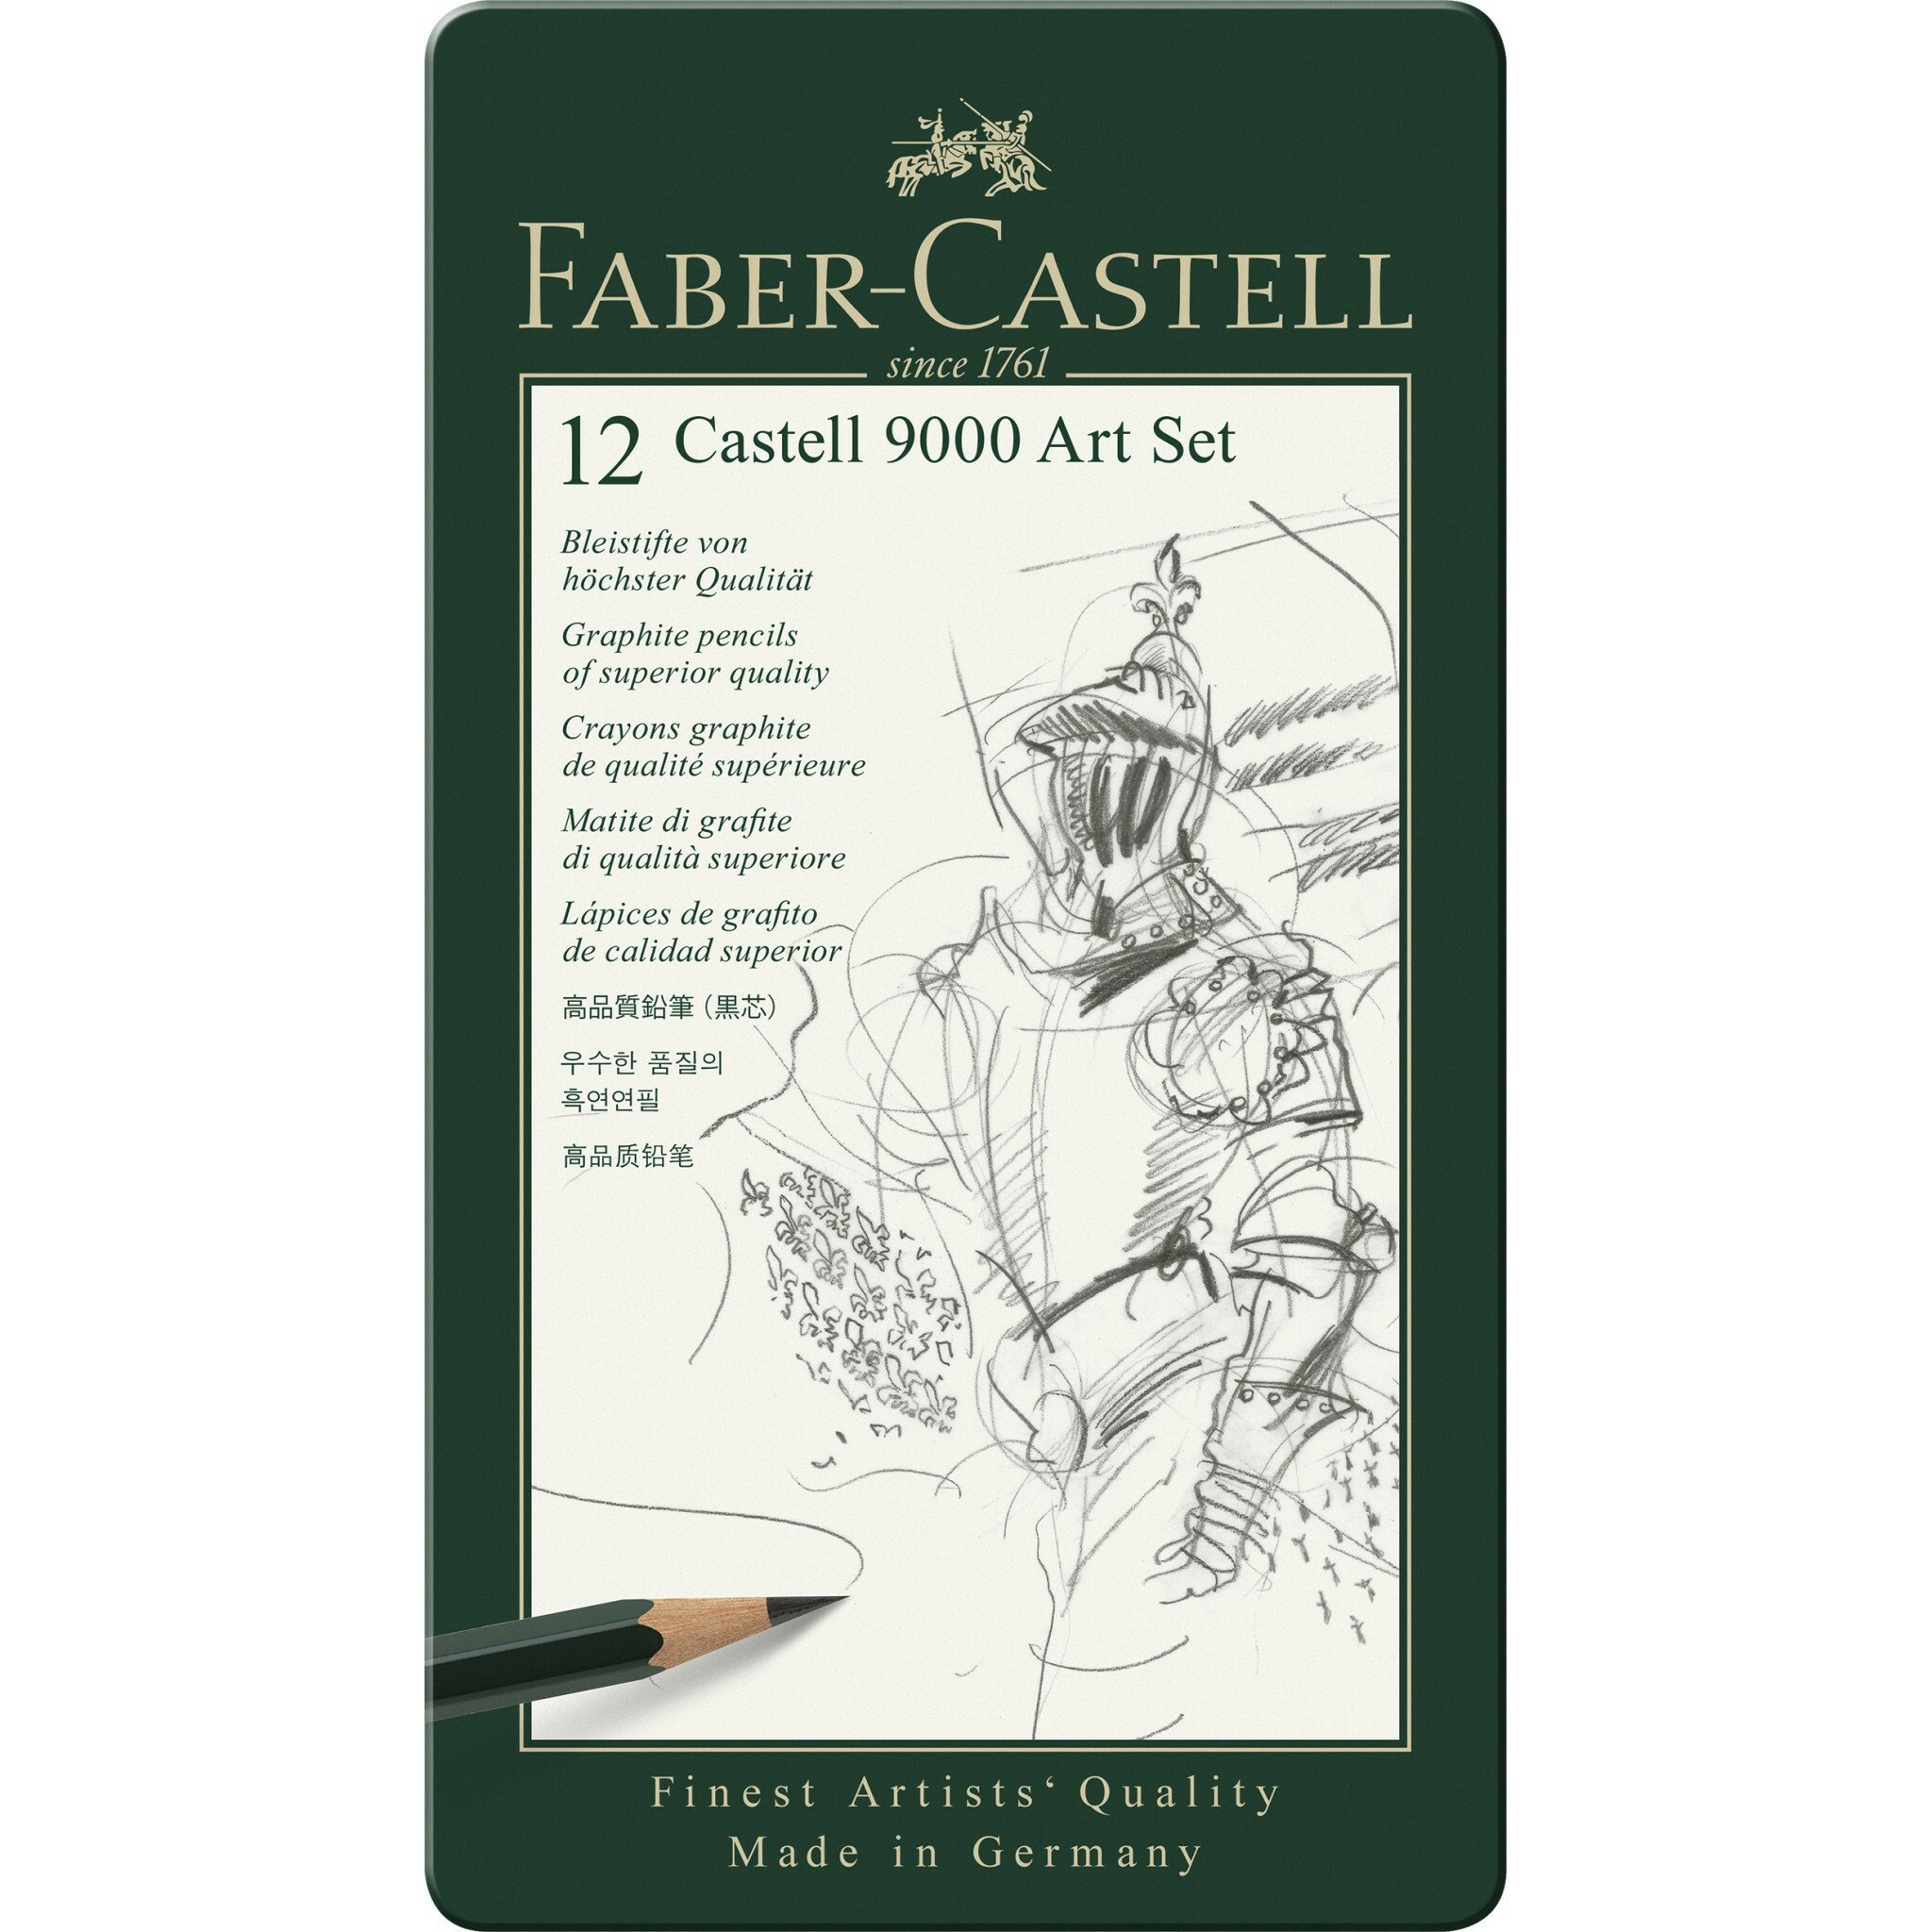 【文具通】Faber-Castell 輝柏 高級藝術家 9000 119065 製圖 繪圖 素描 鉛筆 12支入 A1110110